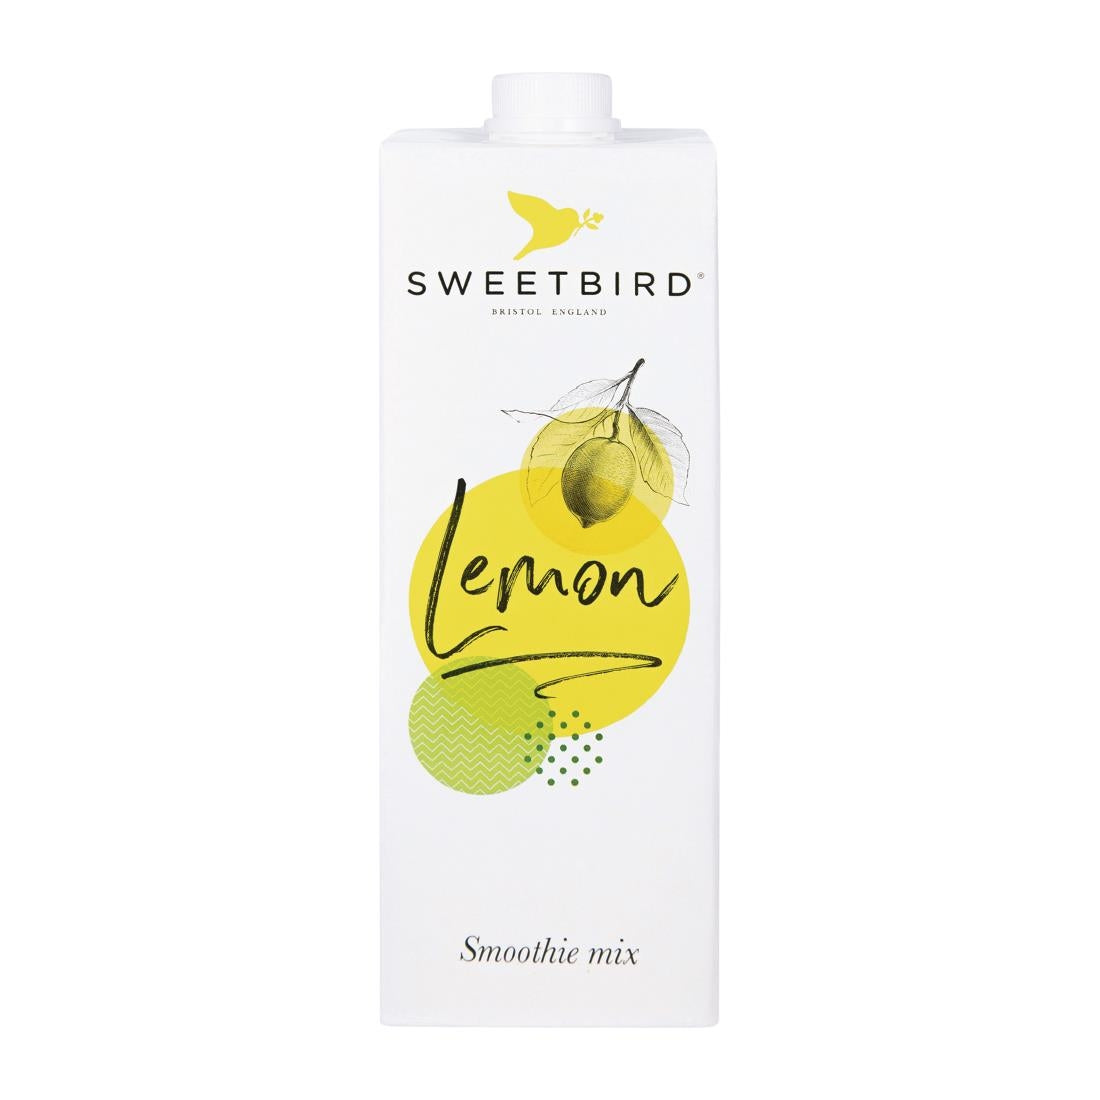 DX588 Sweetbird Lemon Smoothie 1Ltr